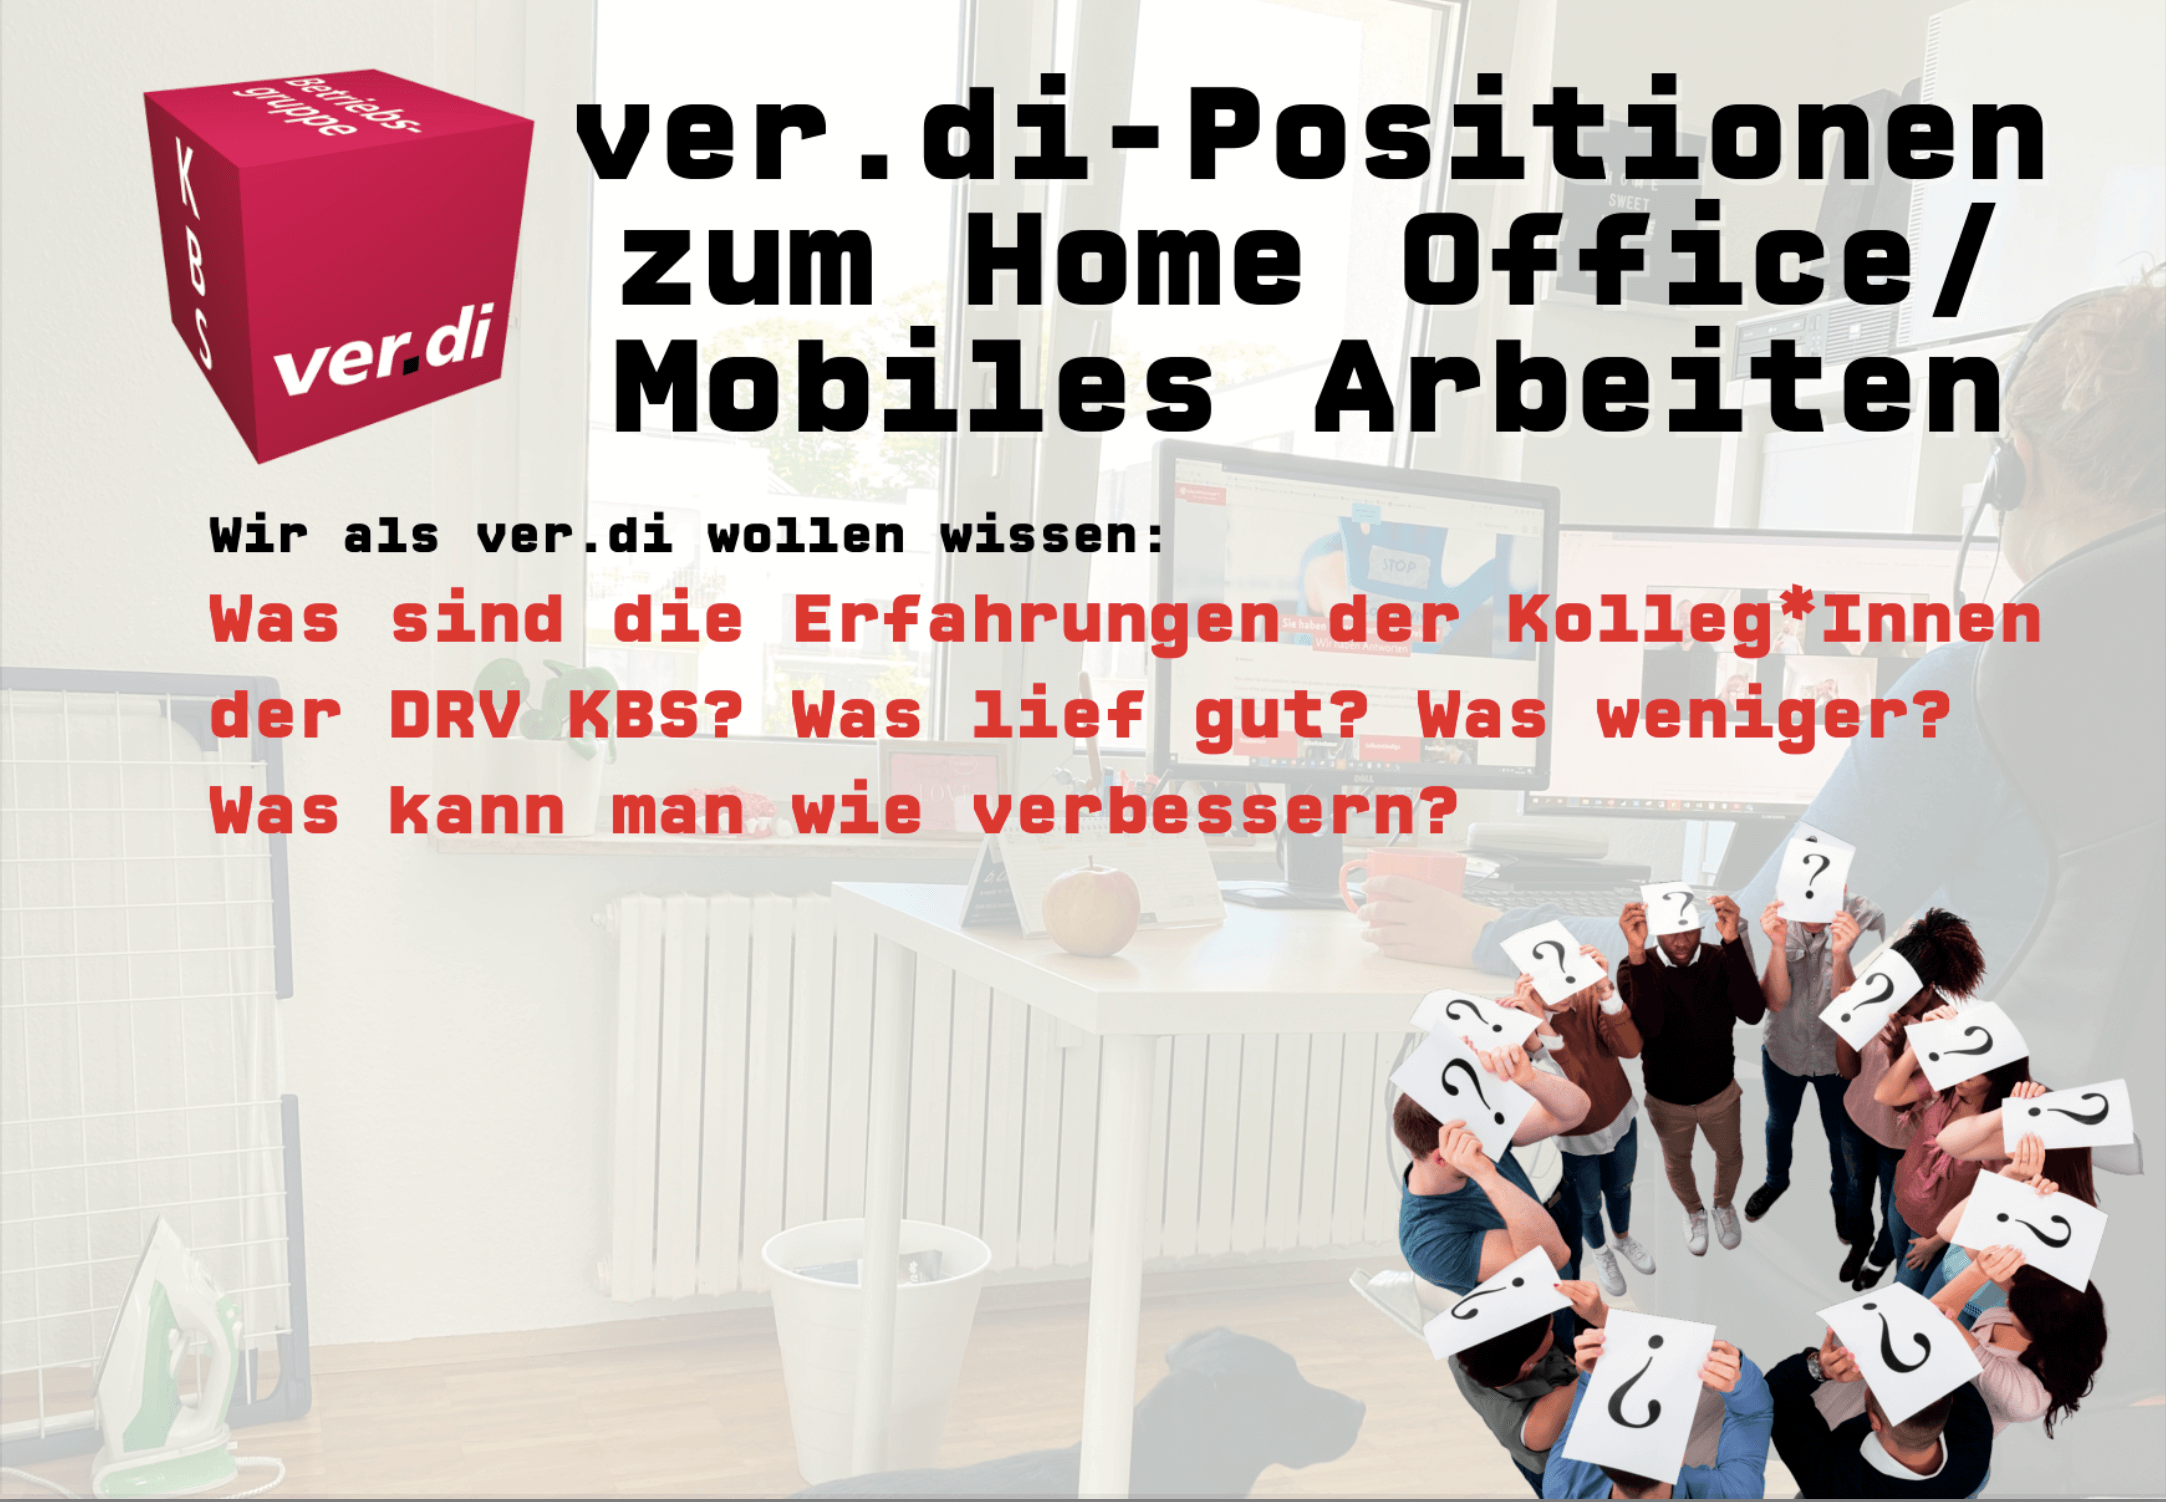 ver.di-Positionen zum Home Office / Mobiles Arbeiten: Wir wollen wissen, wie die Erfahrungen der Kolleg*Innen bei der DRV KBS dazu sind.